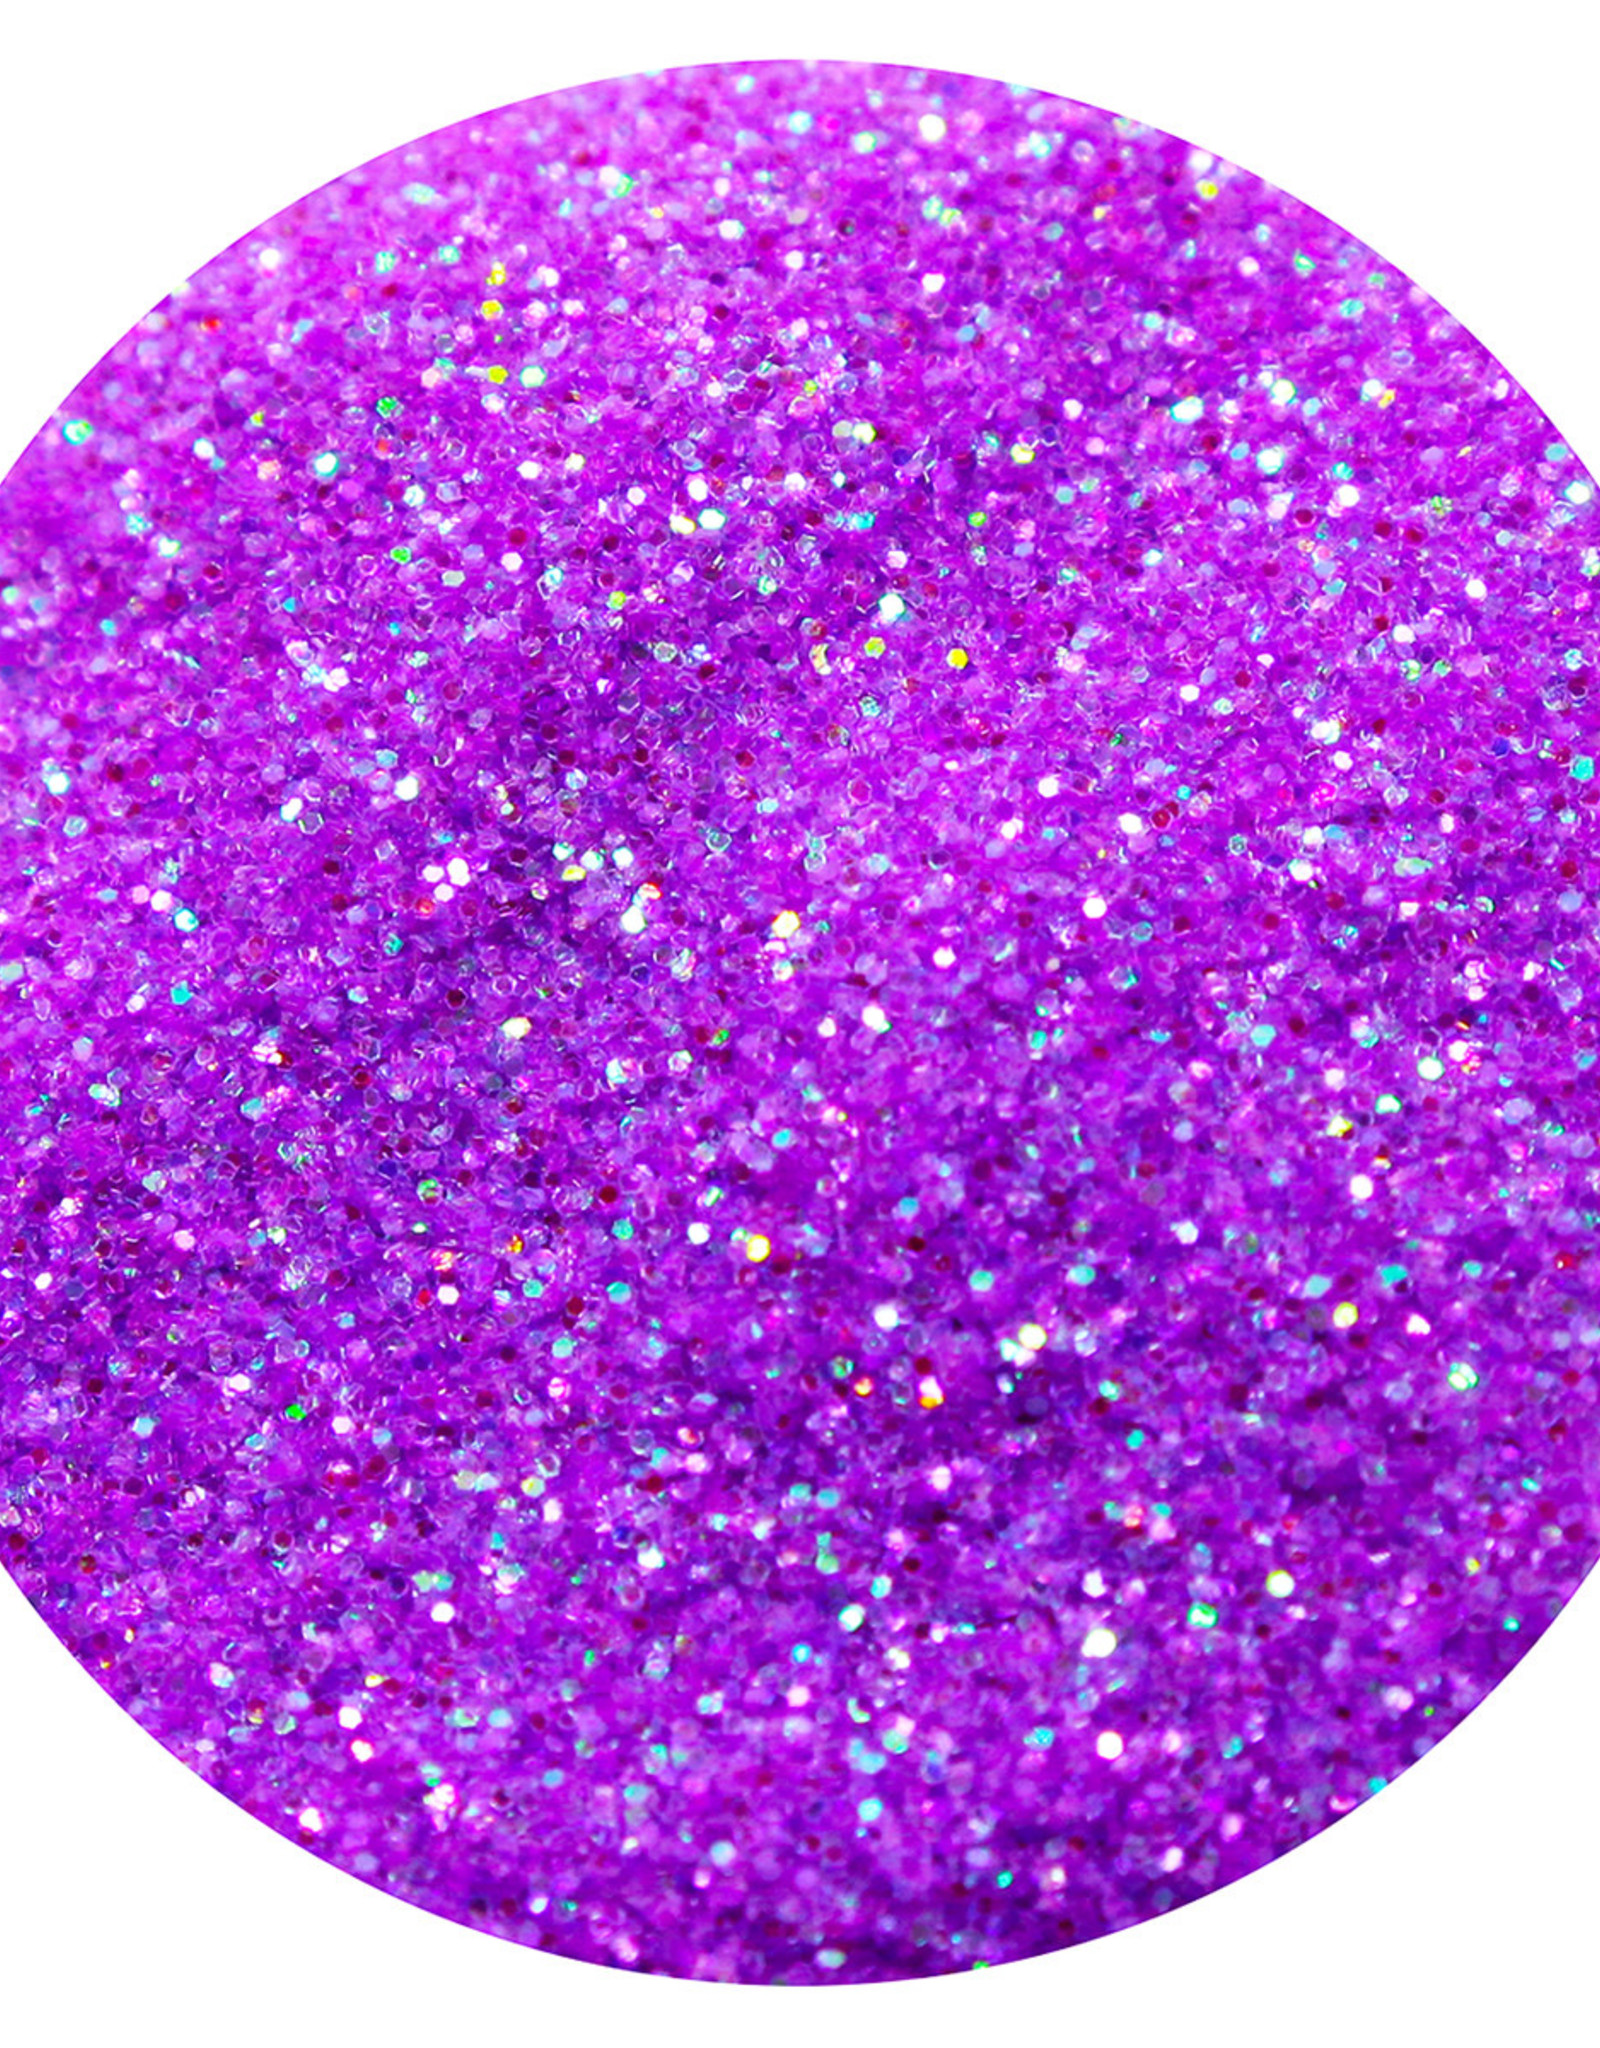 Techno Glitter - PURPLE RAINBOW